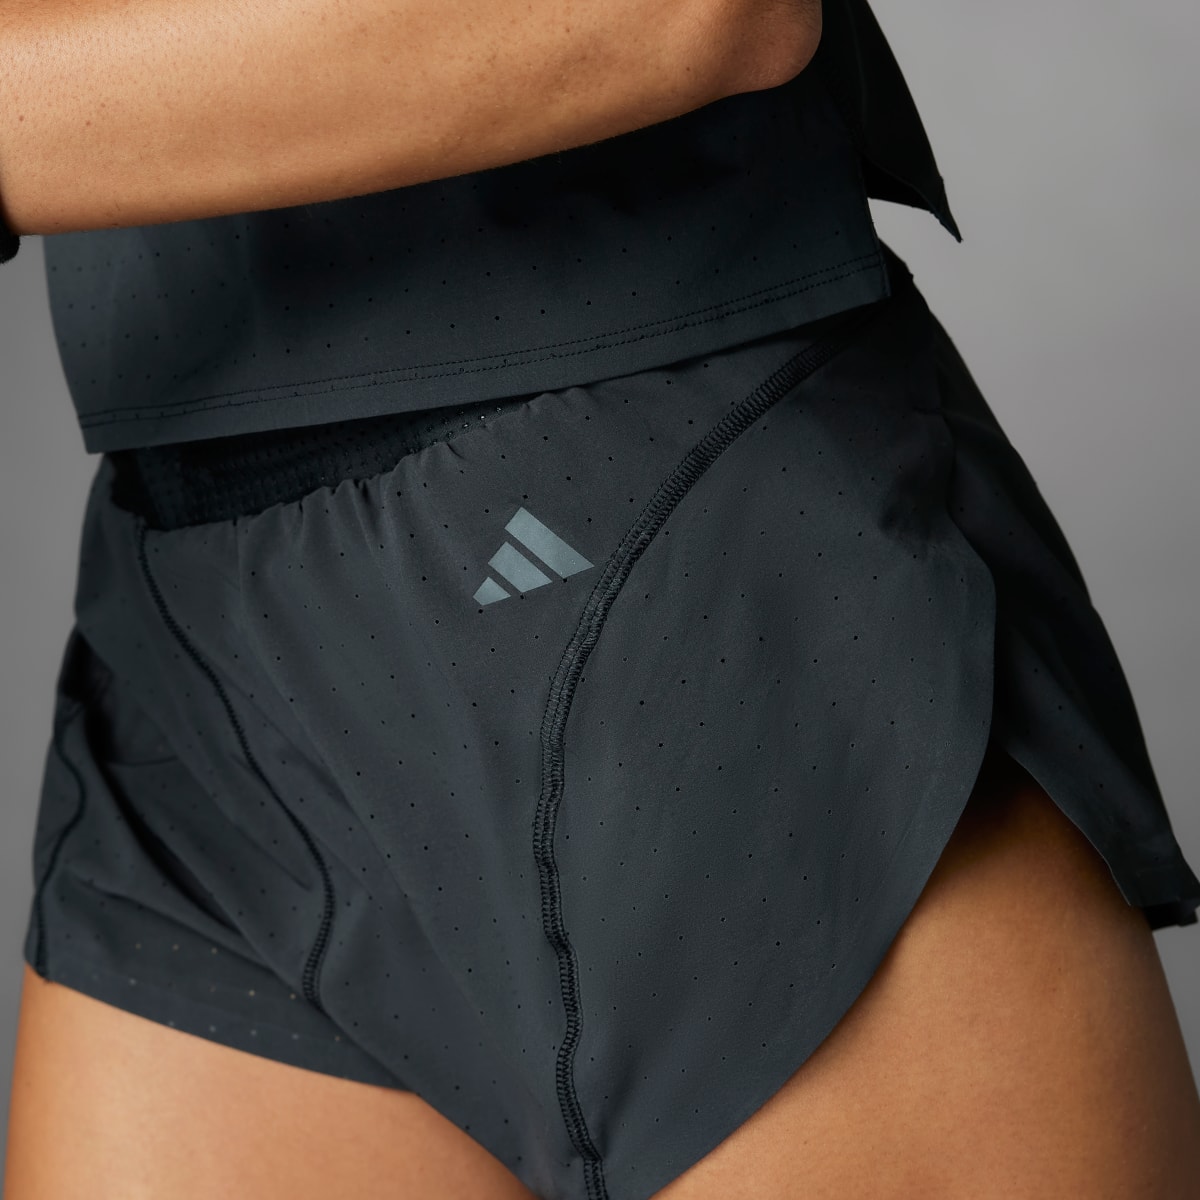 Adidas Adizero Running Split Shorts. 4